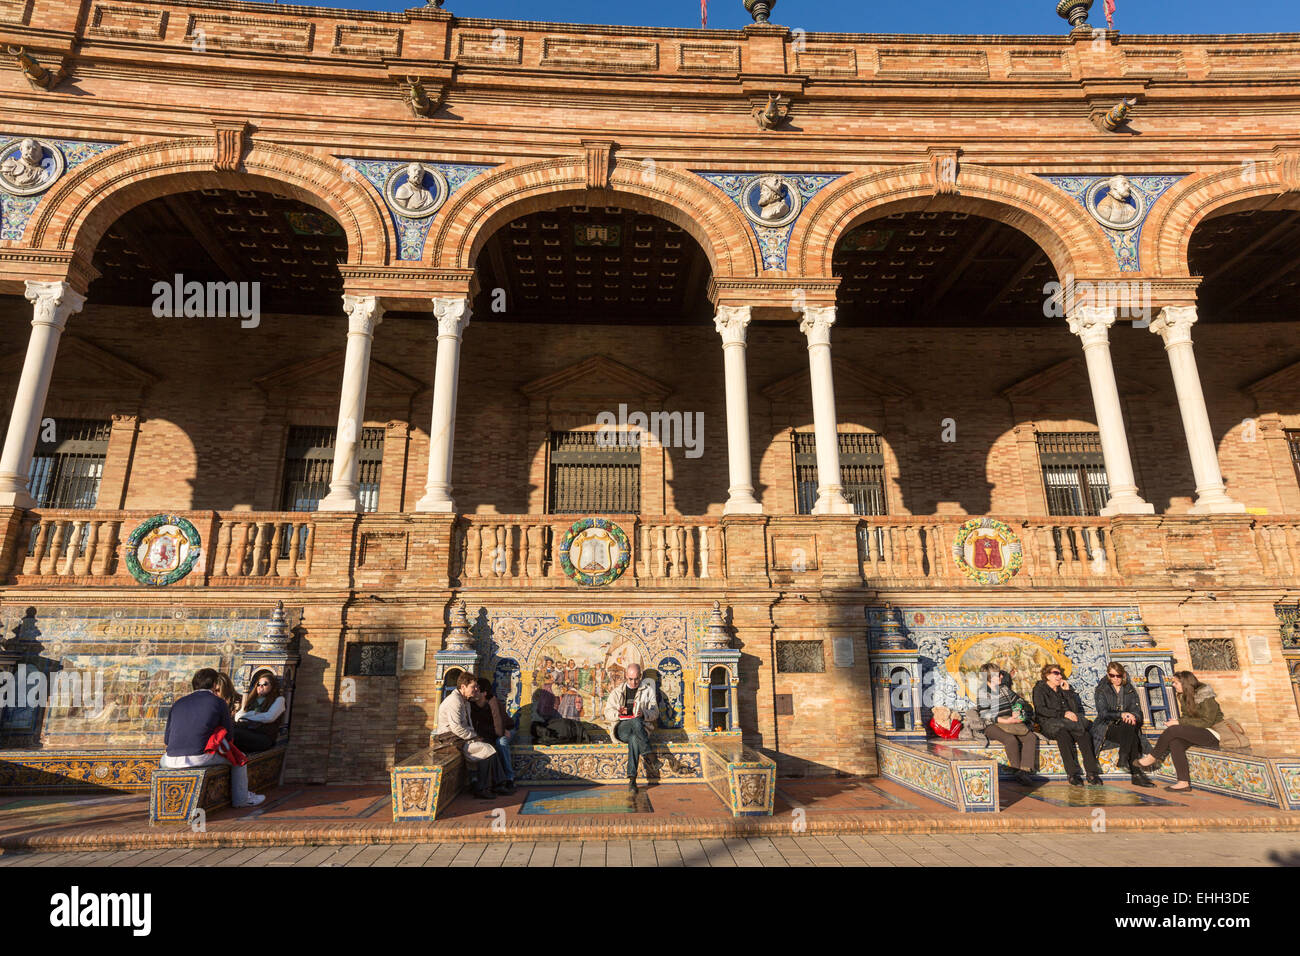 Menschen sitzen im Kachelofen Provinz Nischen an den Wänden von der Plaza de España, Spanien Platz, Luisa in Sevilla. Stockfoto